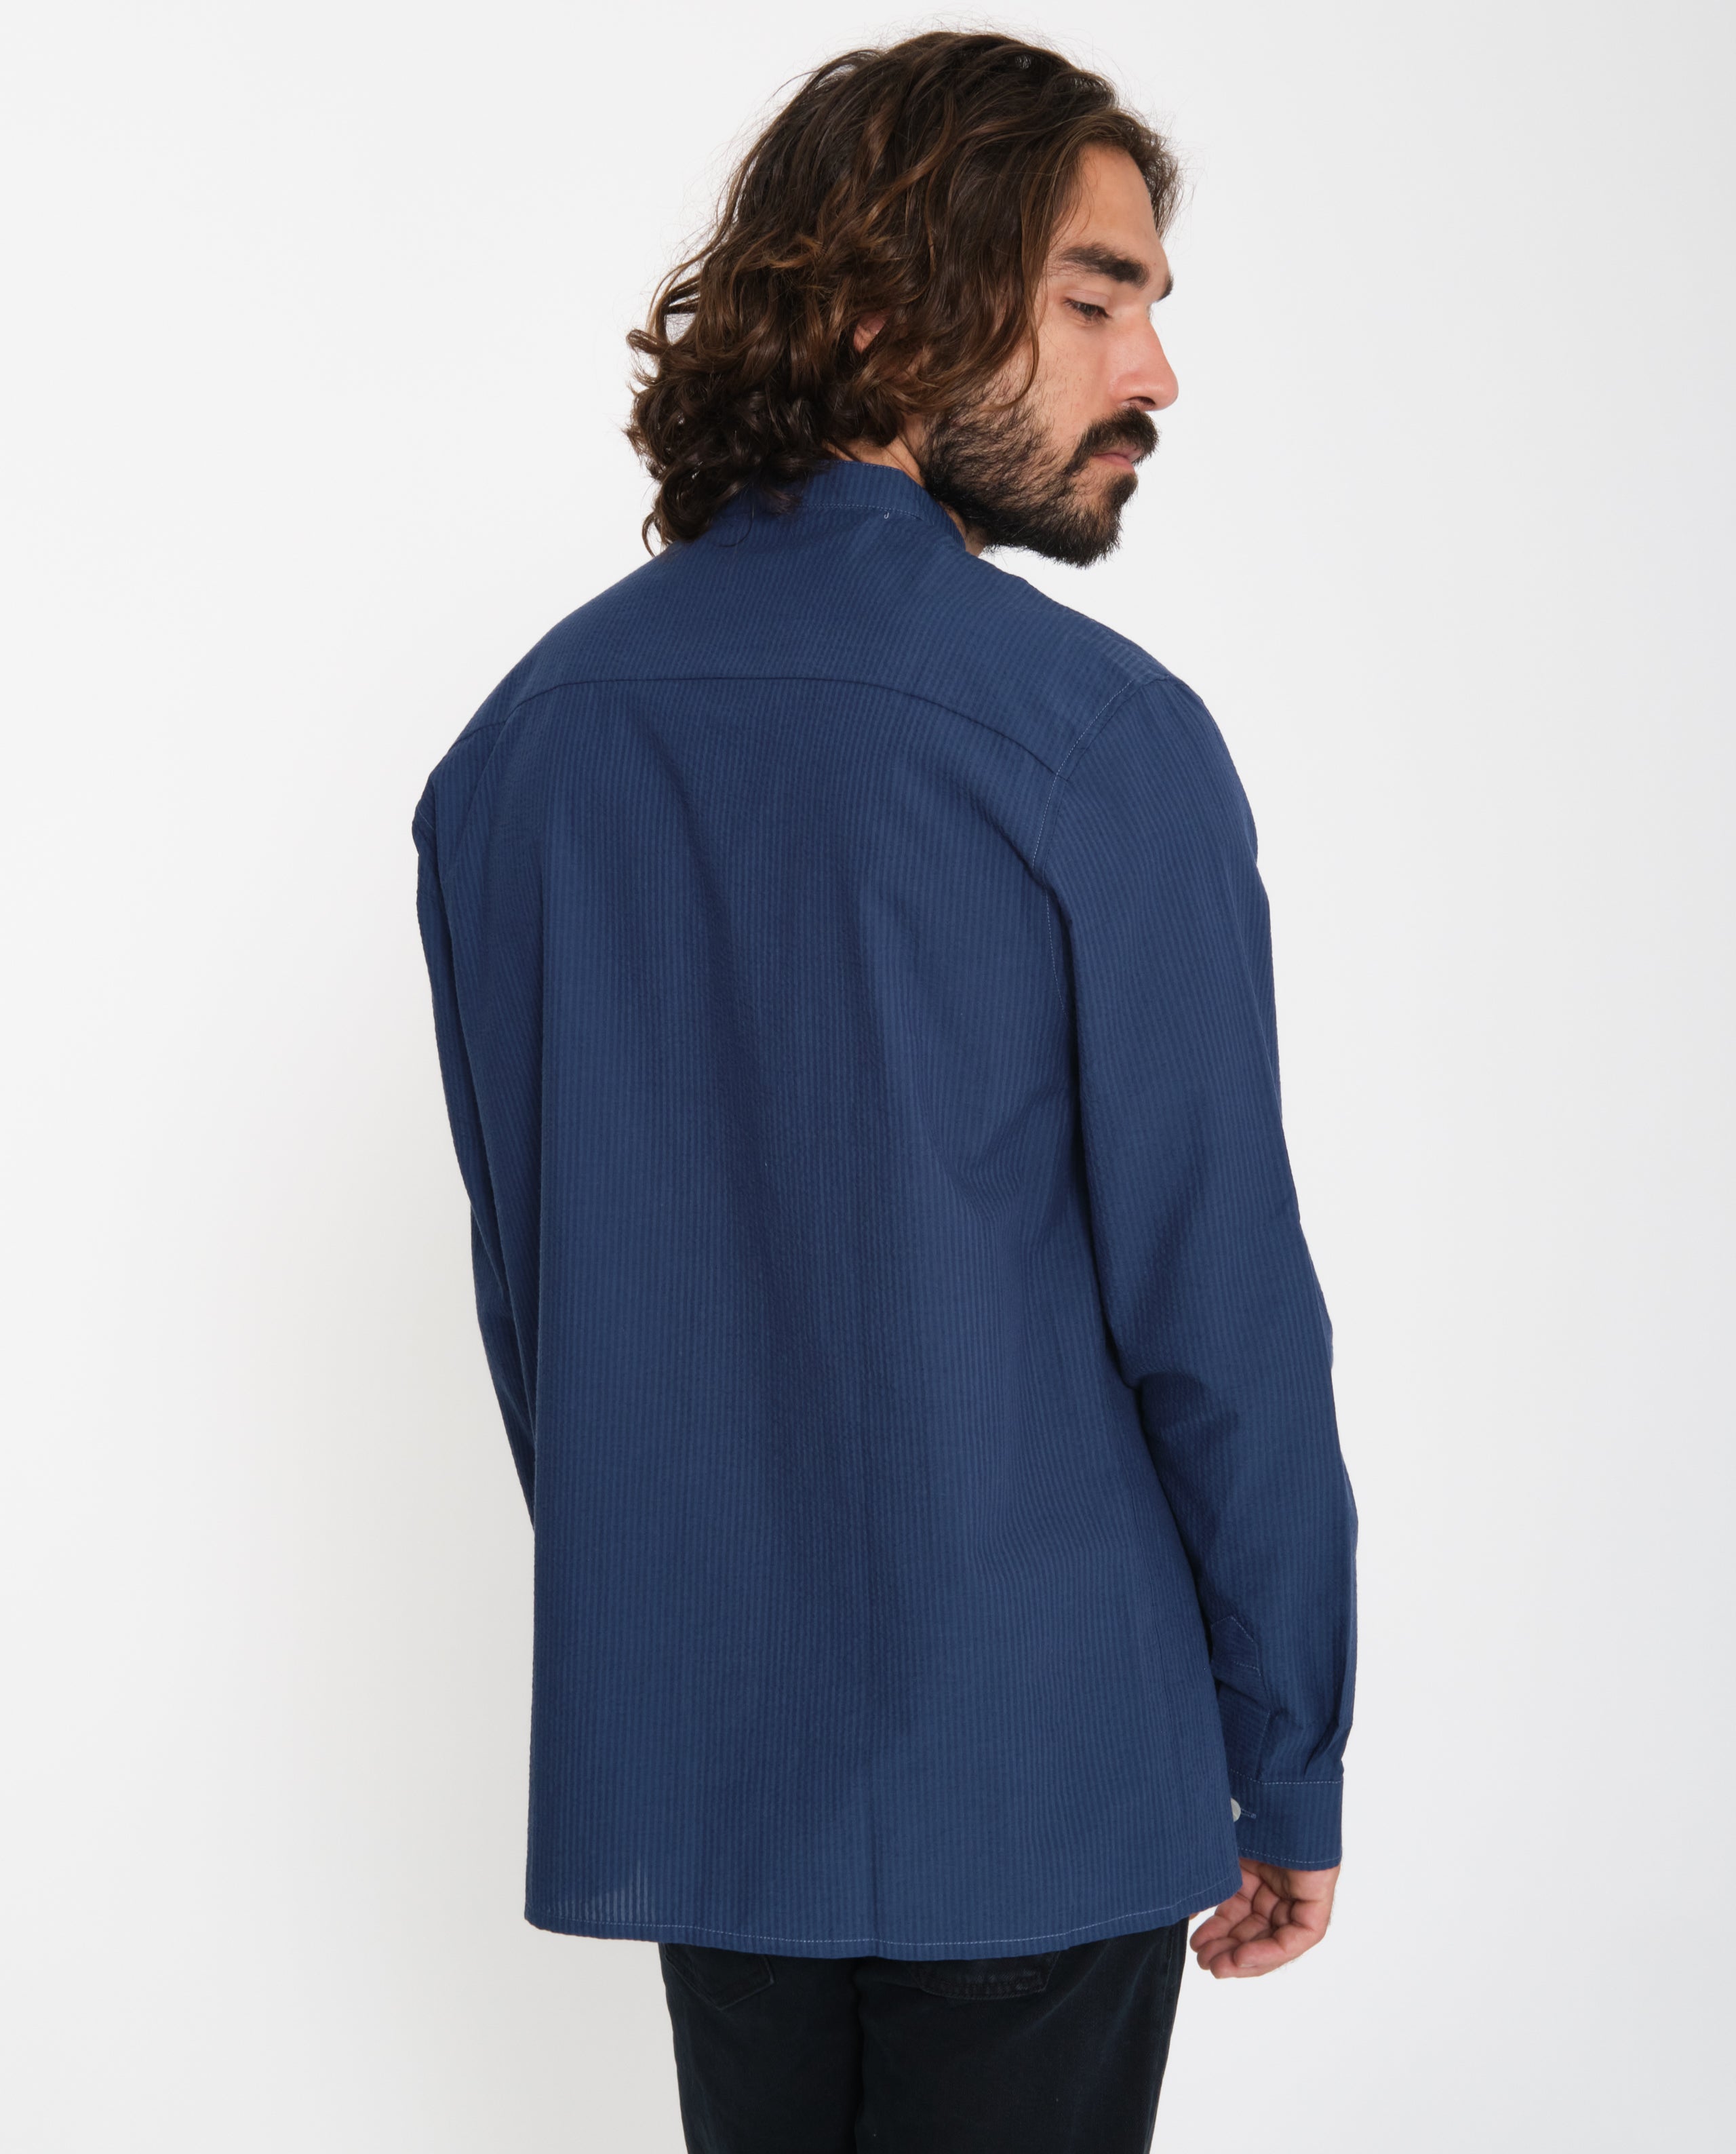 marché commun rotholz sur-chemise homme col officier fines rayures coton biologique fabriquée en europe bleu